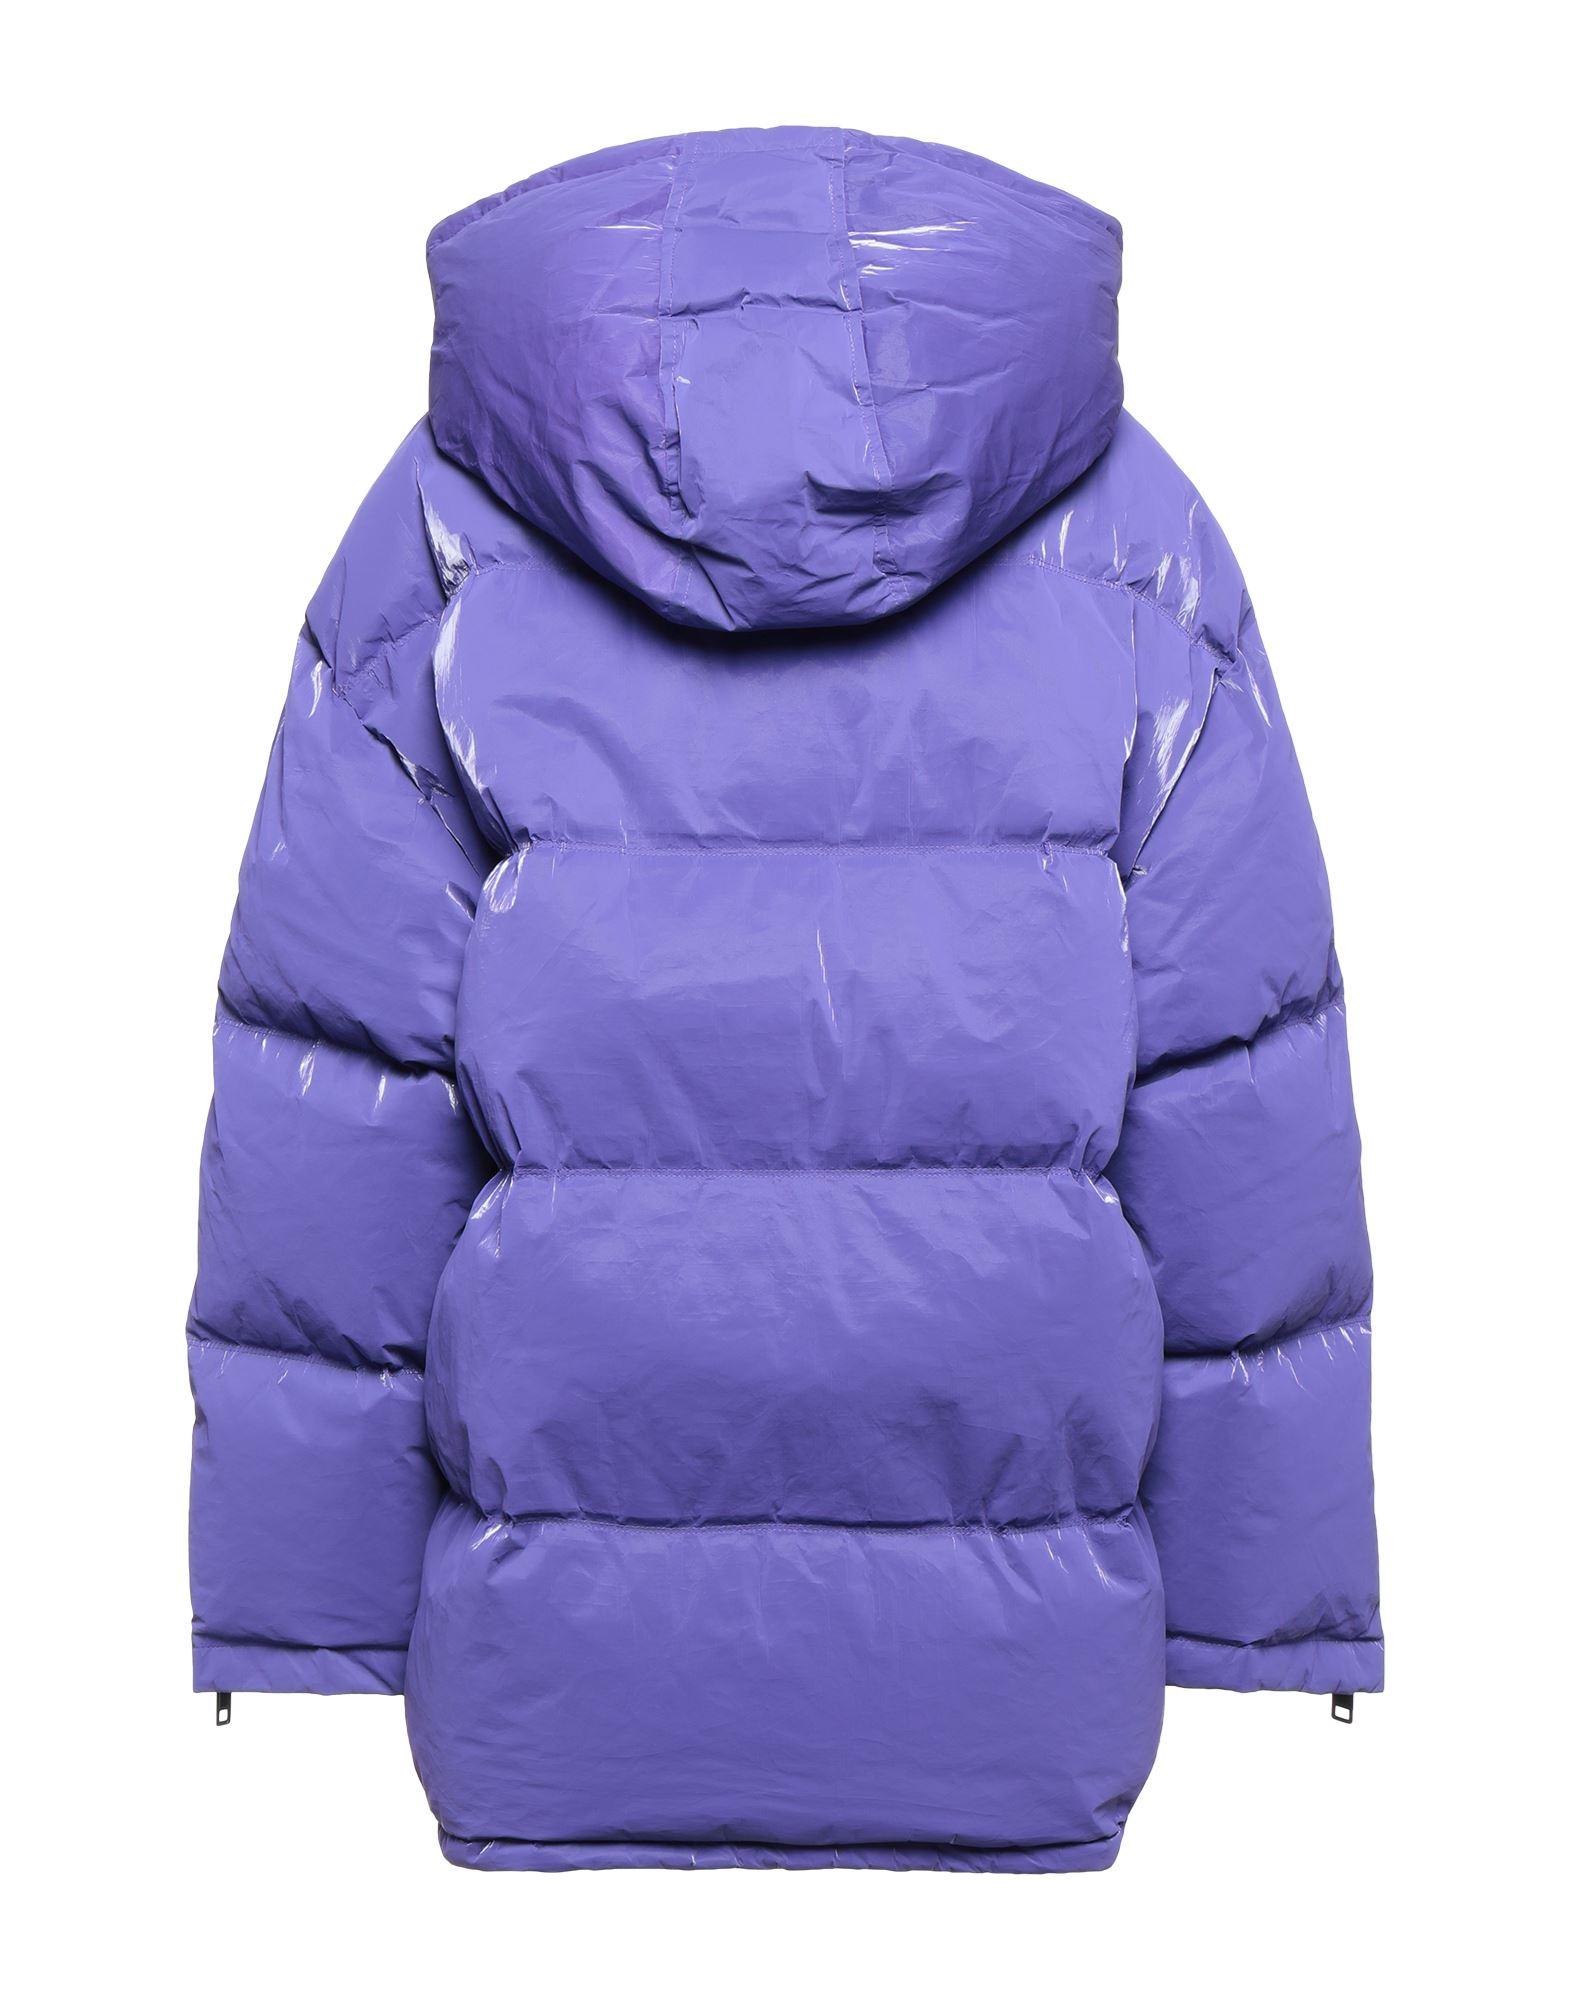 purple down jacket